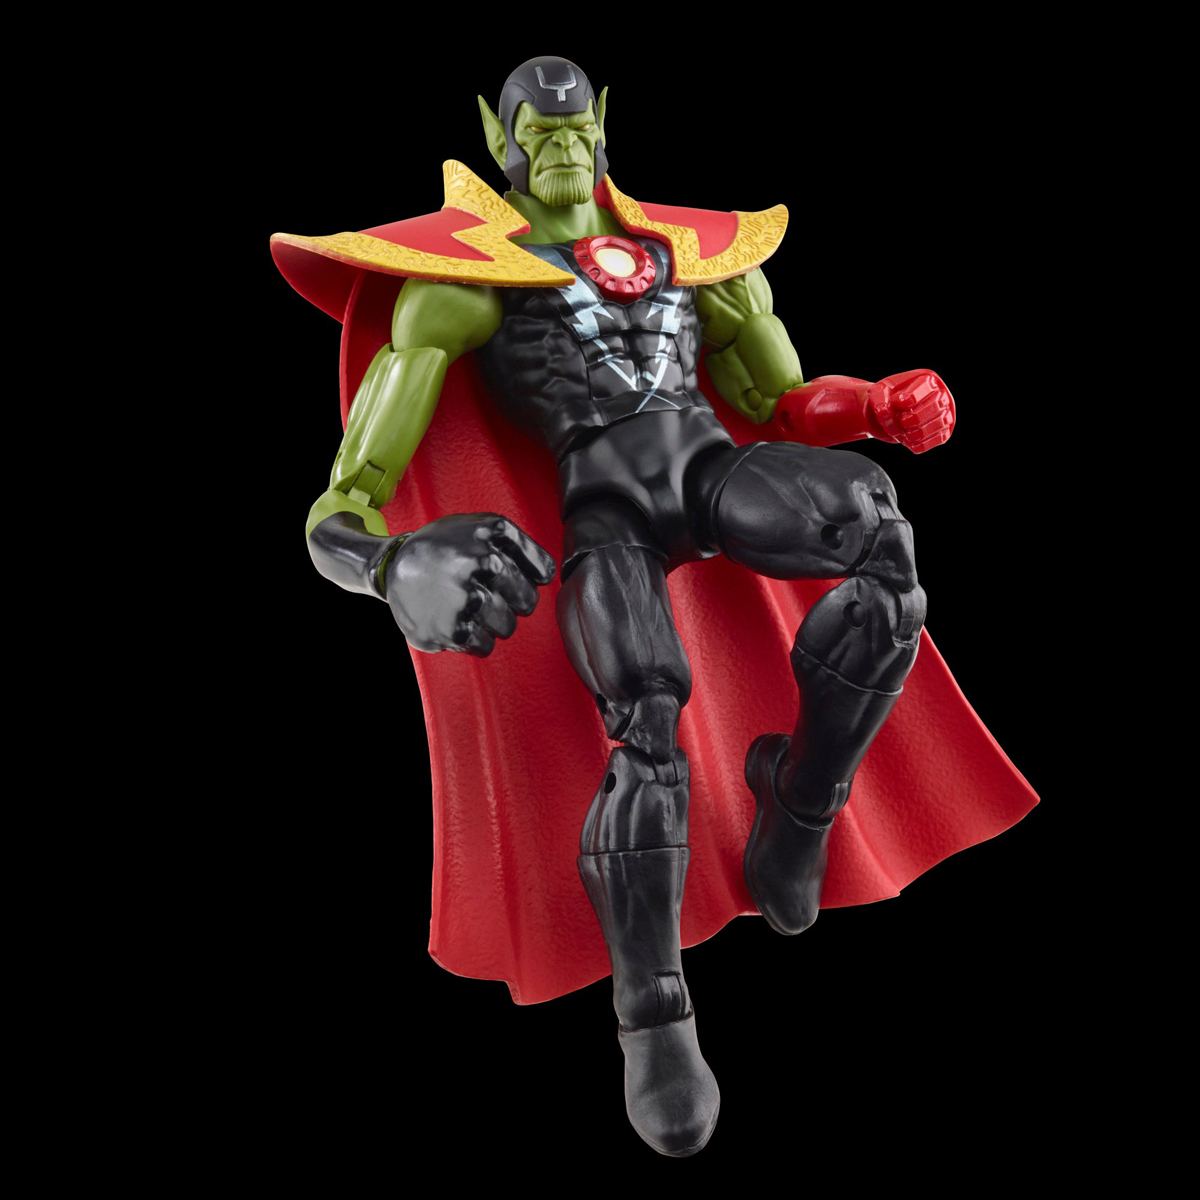 Marvel-Legends-Skrull-Queen-and-Super-Skrull-Action-Figures-14